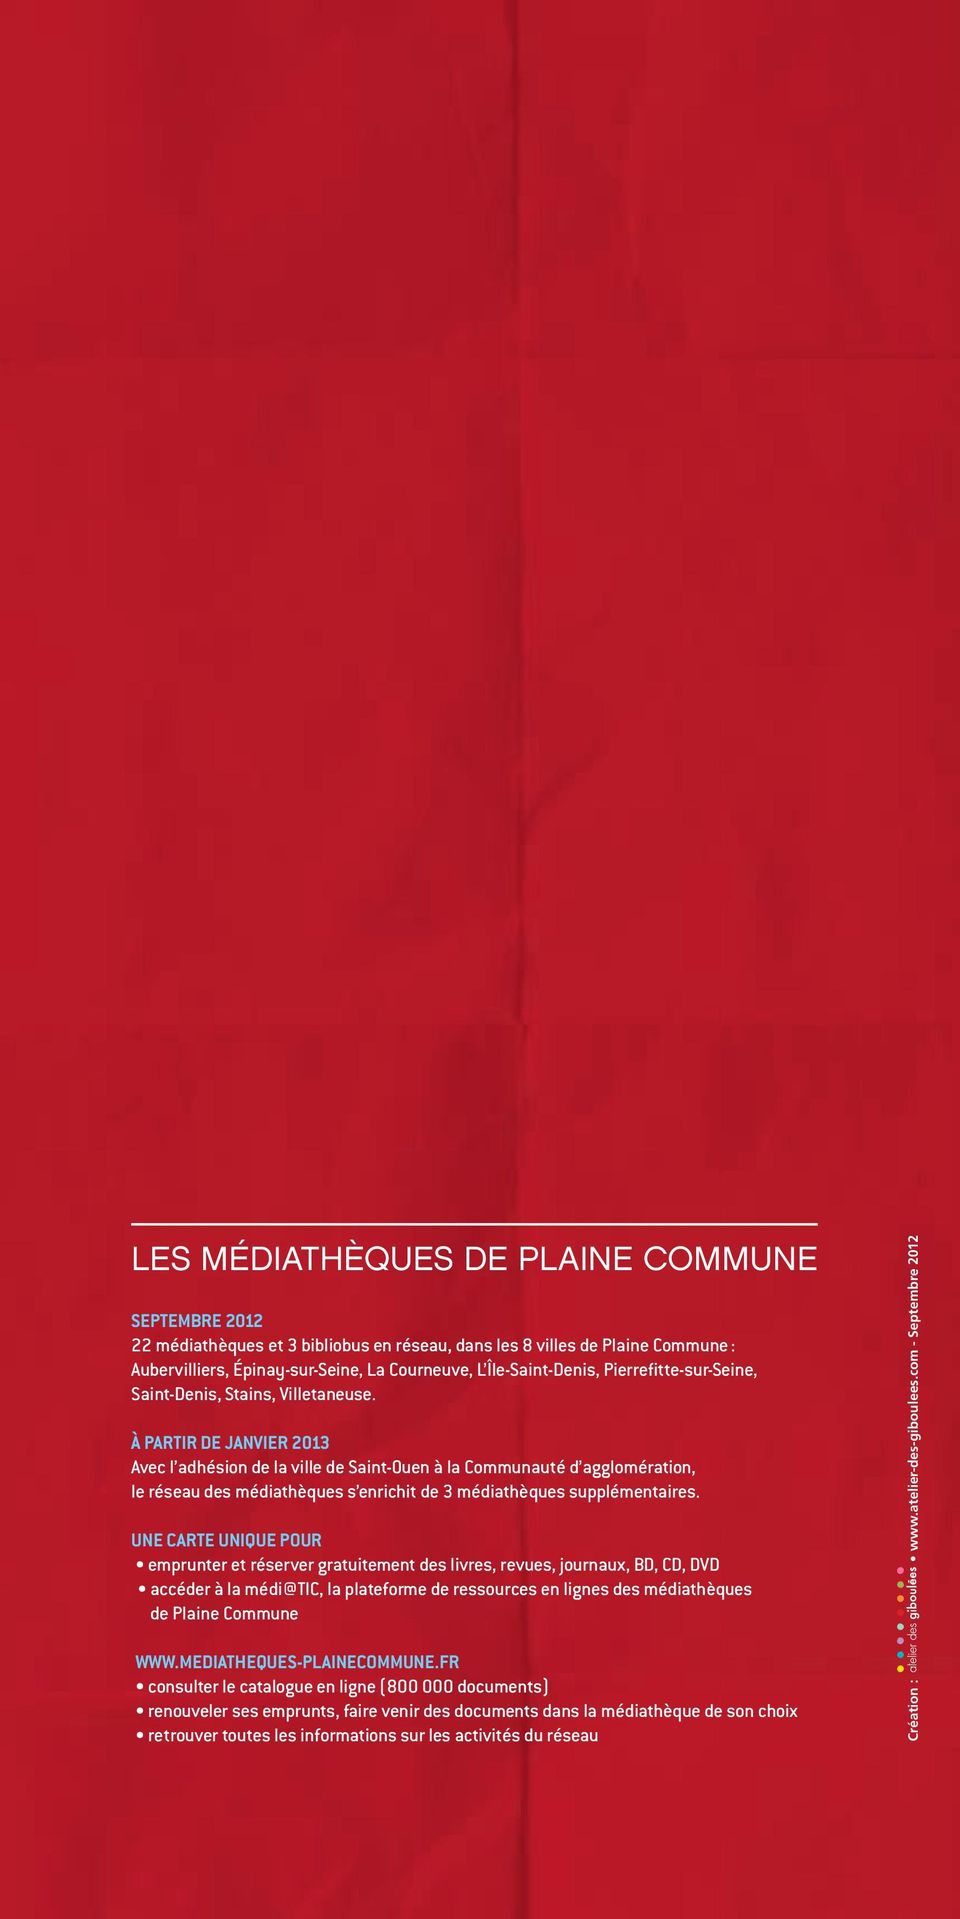 À PARTIR DE JANVIER 2013 Avec l adhésion de la ville de Saint-Ouen à la Communauté d agglomération, le réseau des médiathèques s enrichit de 3 médiathèques supplémentaires.